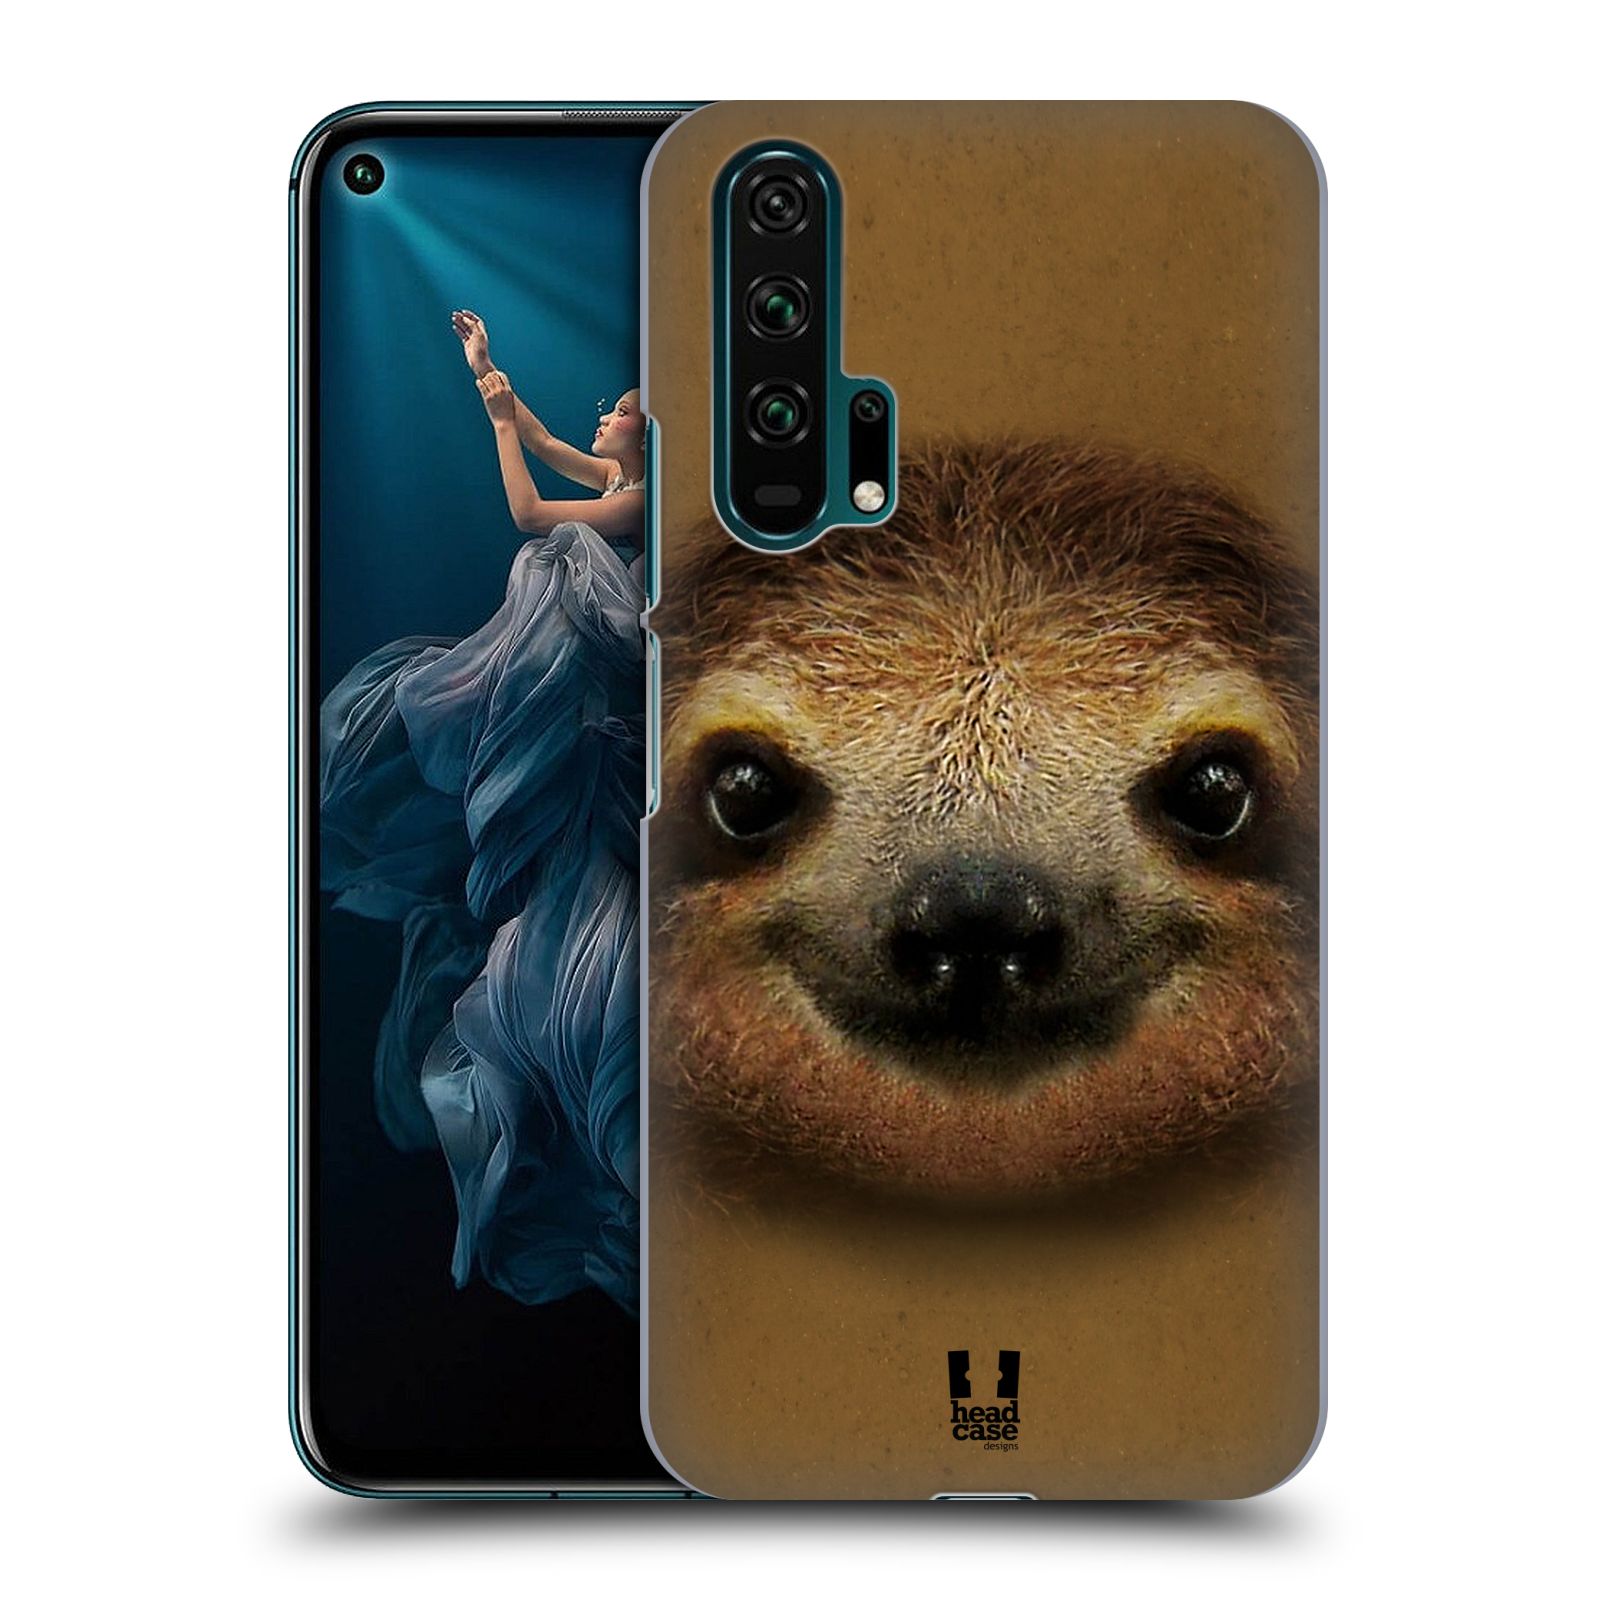 Pouzdro na mobil Honor 20 PRO - HEAD CASE - vzor Zvířecí tváře 2 lenochod